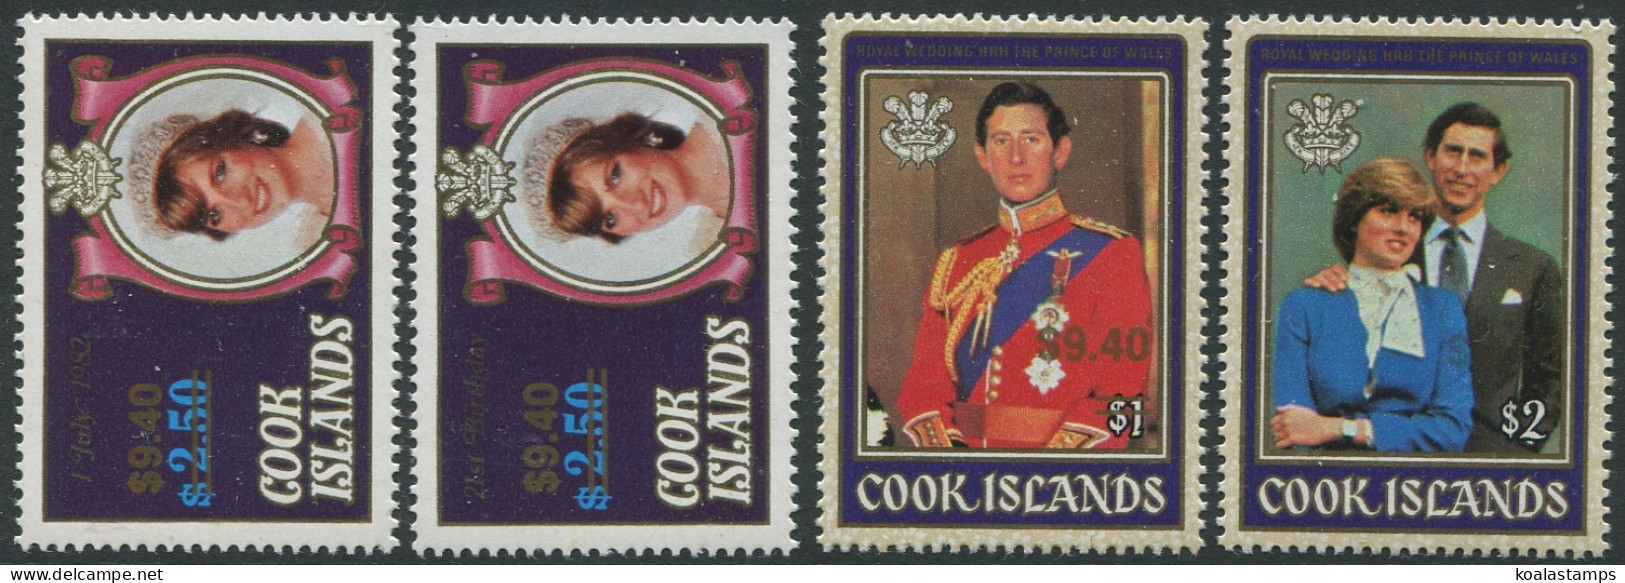 Cook Islands 1987 SG1124-1126 $9.40 Princess Diana Sets MNH - Cook